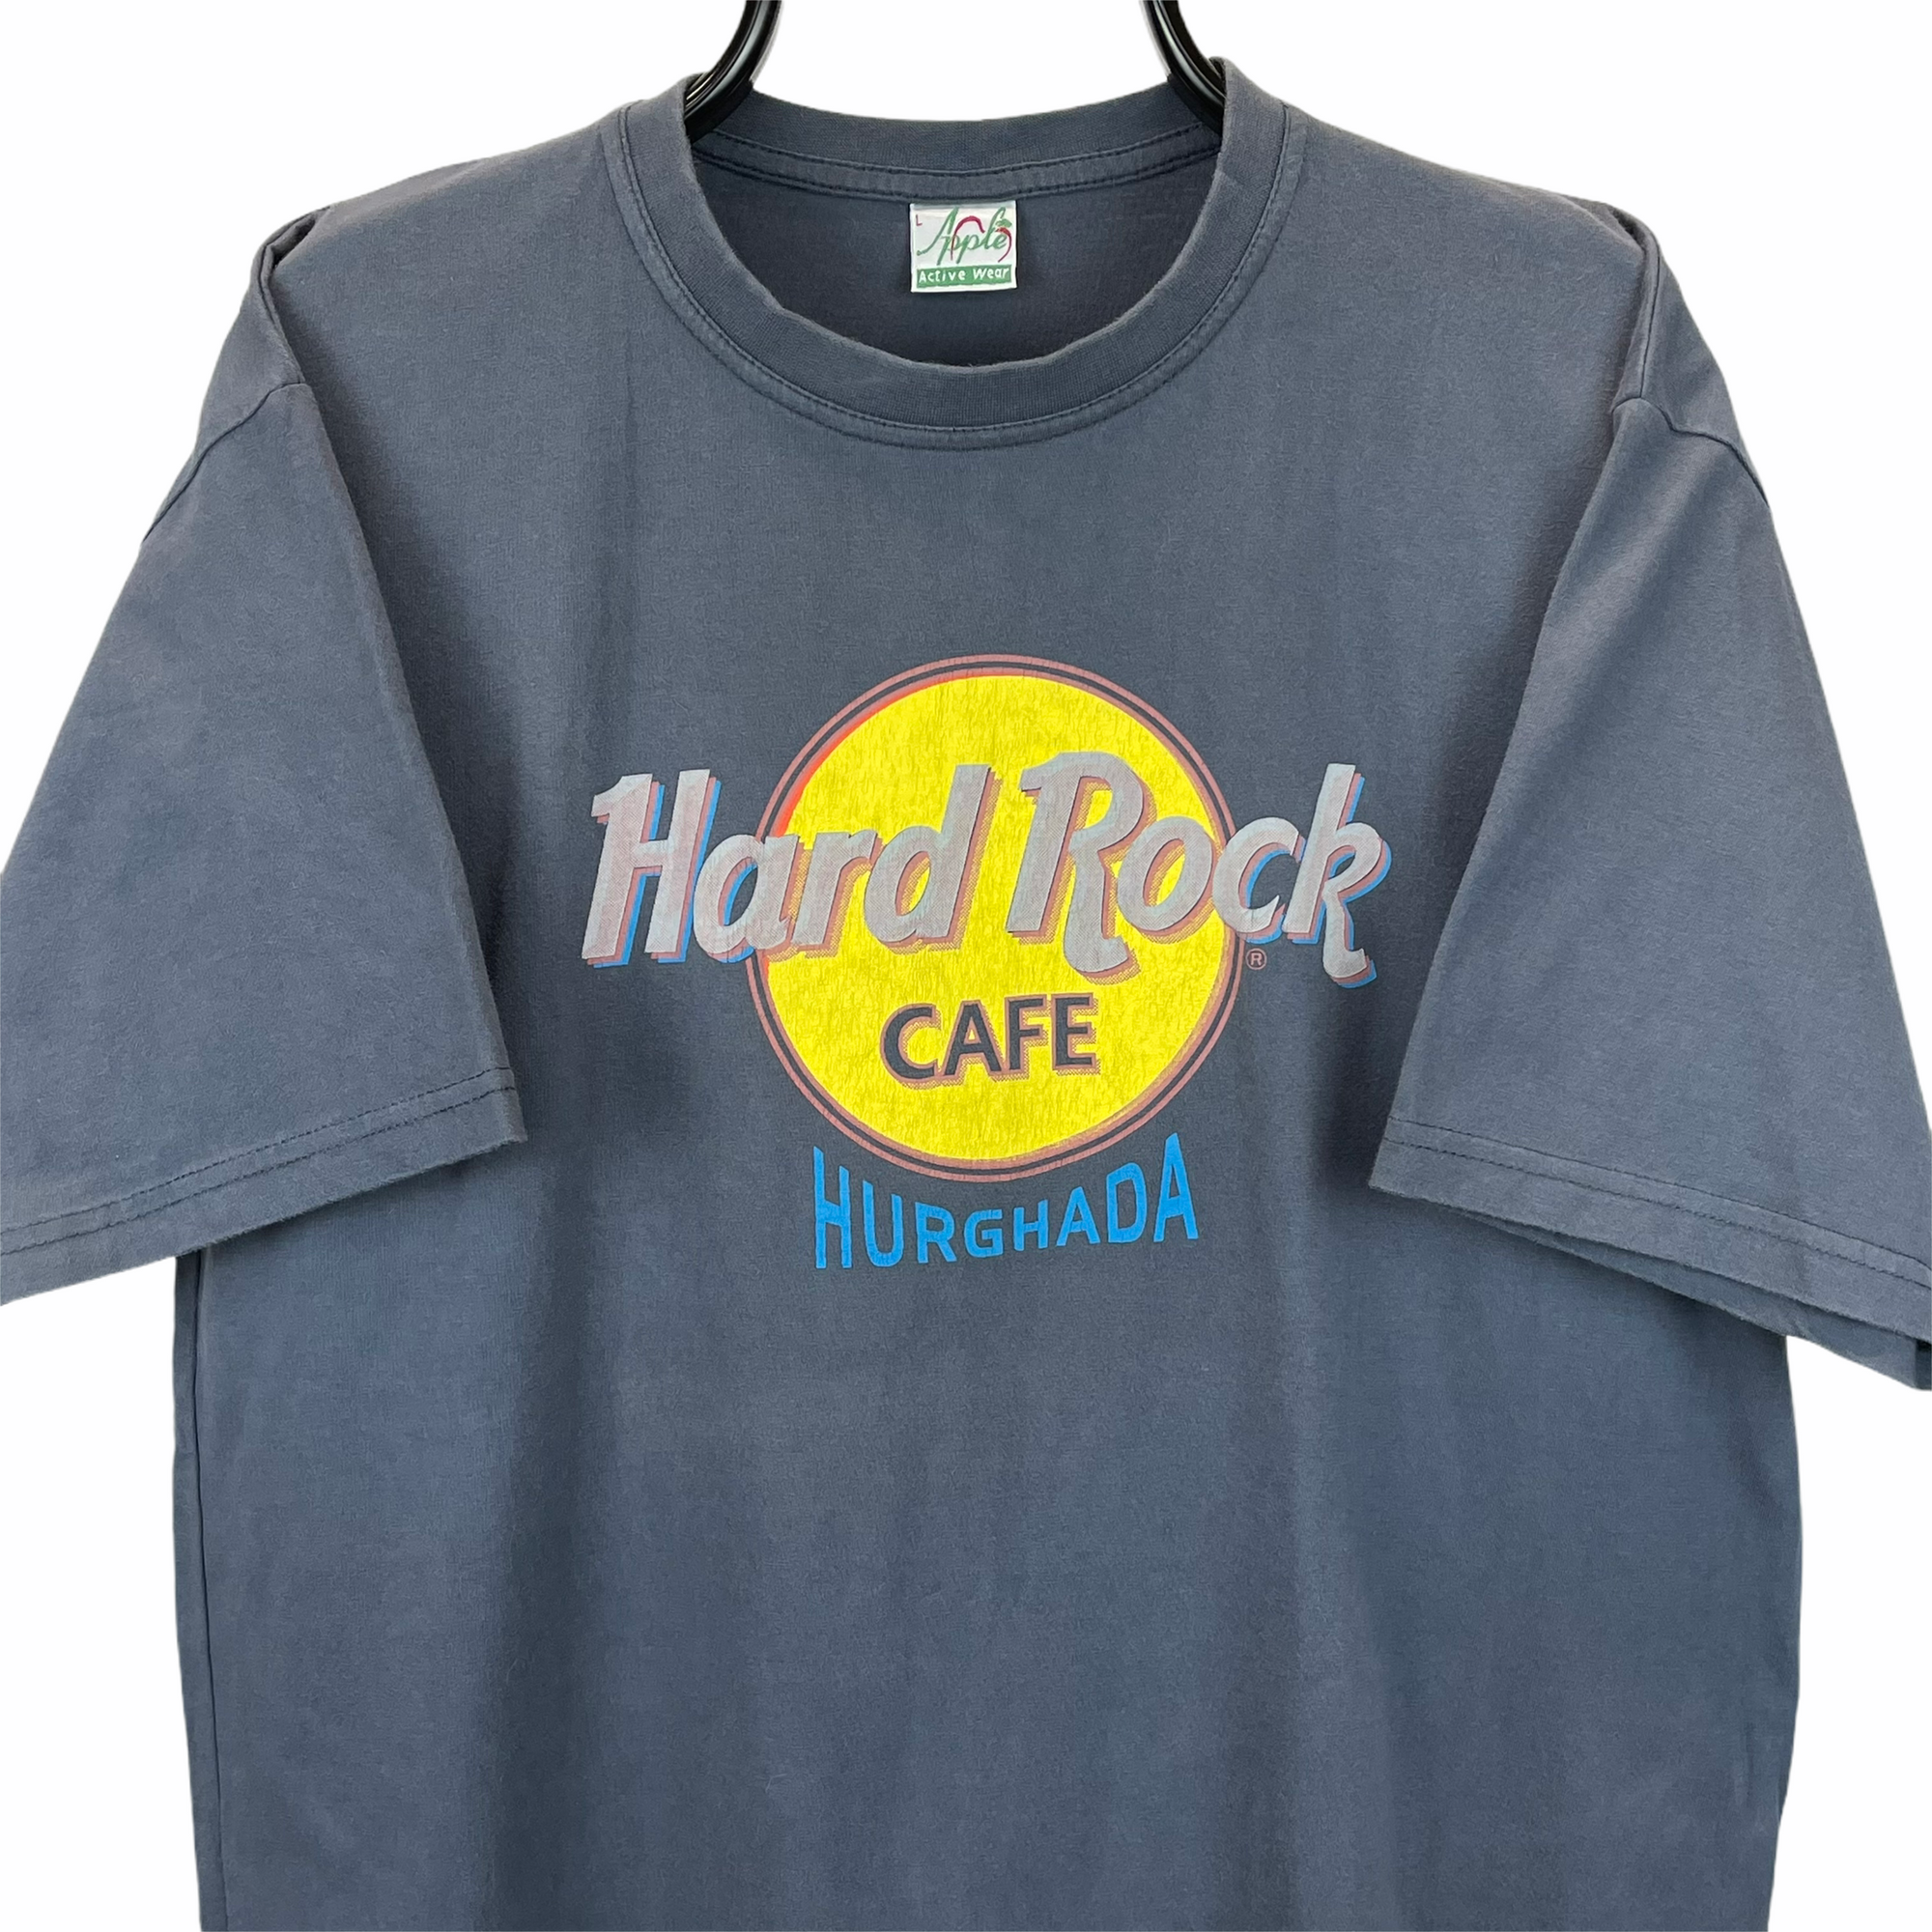 Vintage Hard Rock Cafe Hurghada Tee - Men's Large/Women's XL